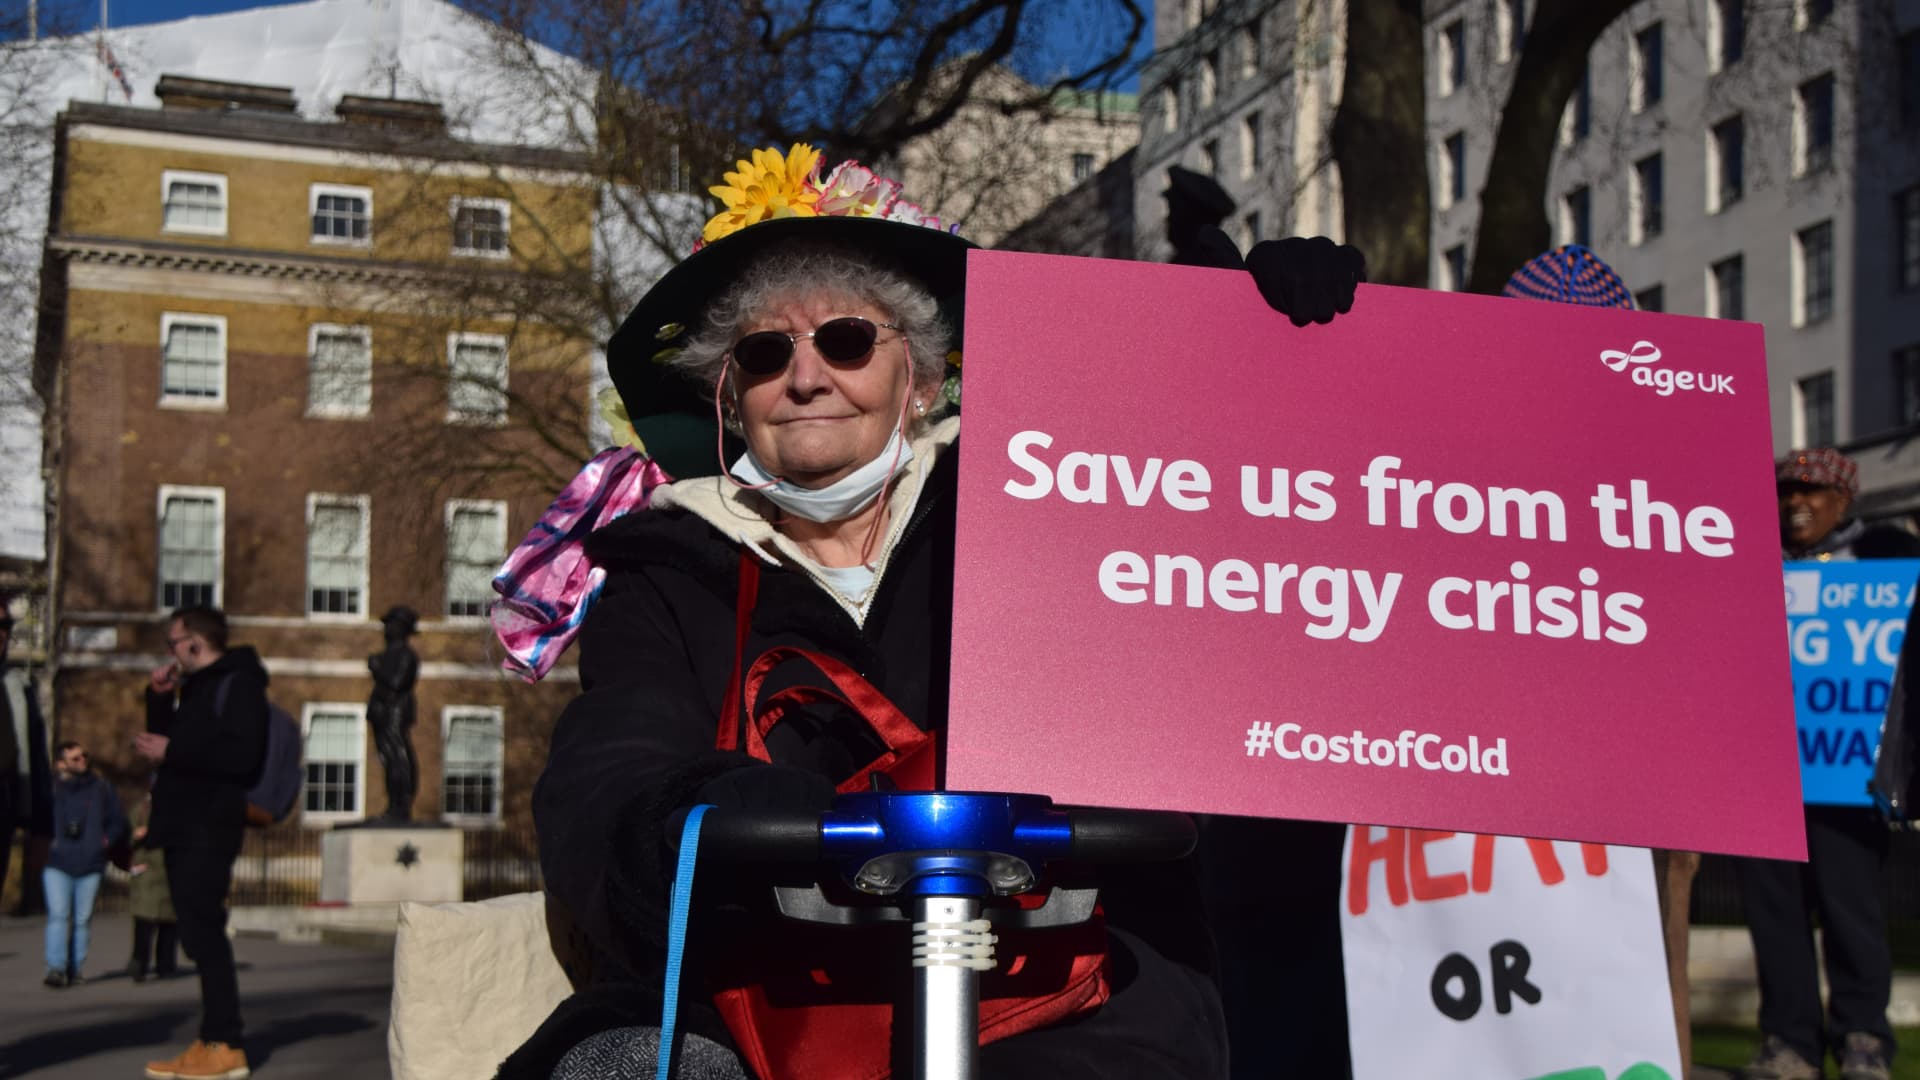 Βρετανία: Ο προϋπολογισμός της κυβέρνησης για την προστασία των επιχειρήσεων από τους αυξημένους λογαριασμούς ενέργειας θα μειωθεί μετά τον Μάρτιο